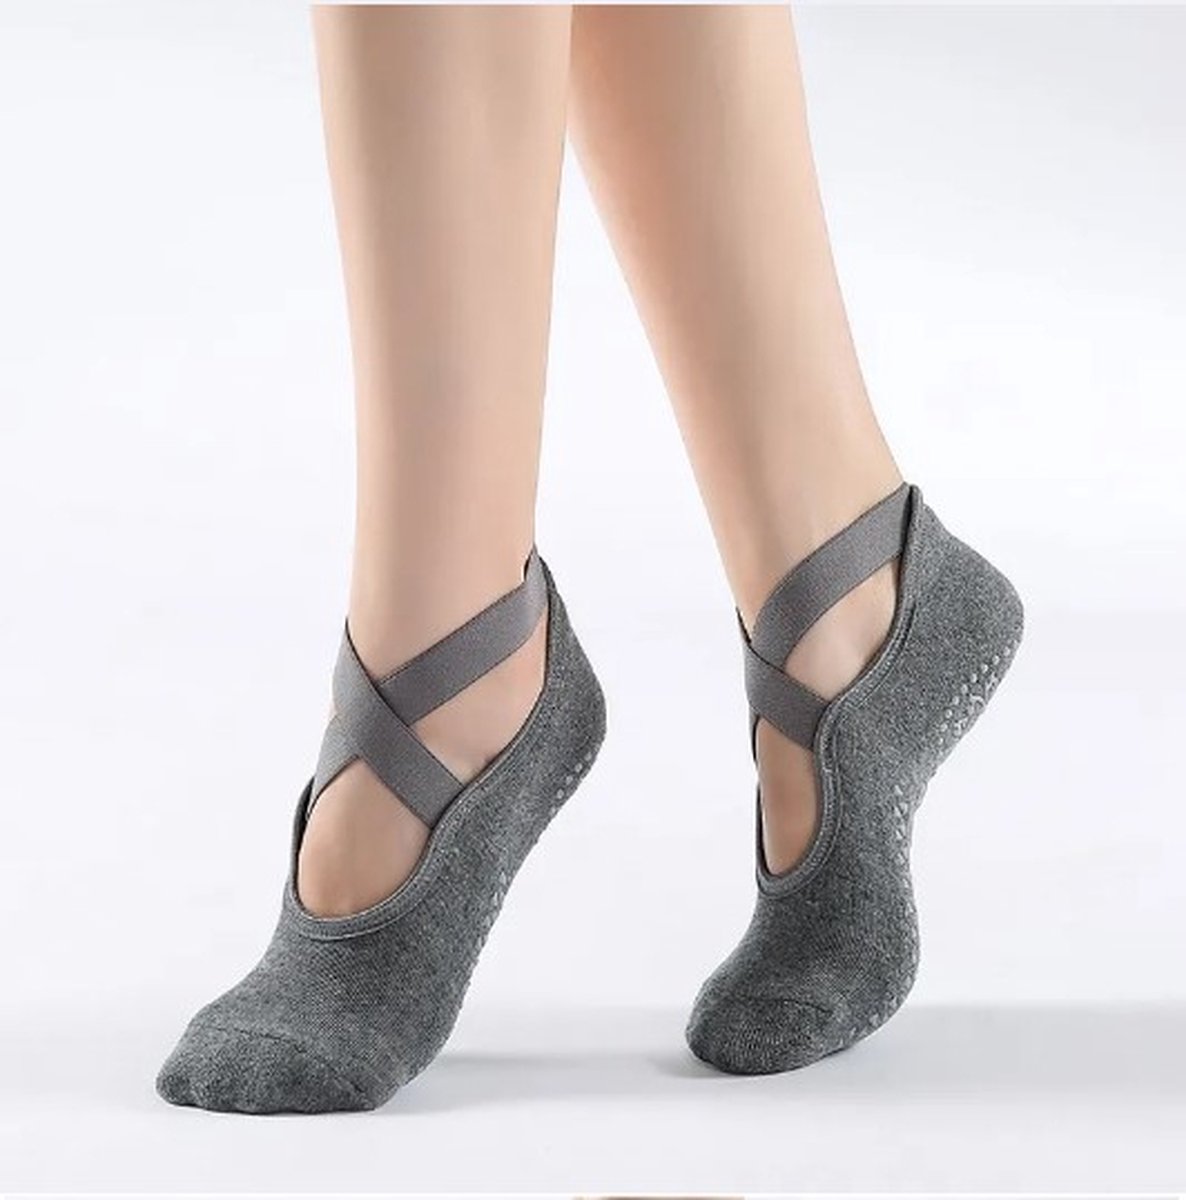 Go Go Gadget - Anti-slip Sokken - Ideaal voor Ballet, Dans, Gym, Fitness, Pilates, Yoga - One size fits most - Grijs